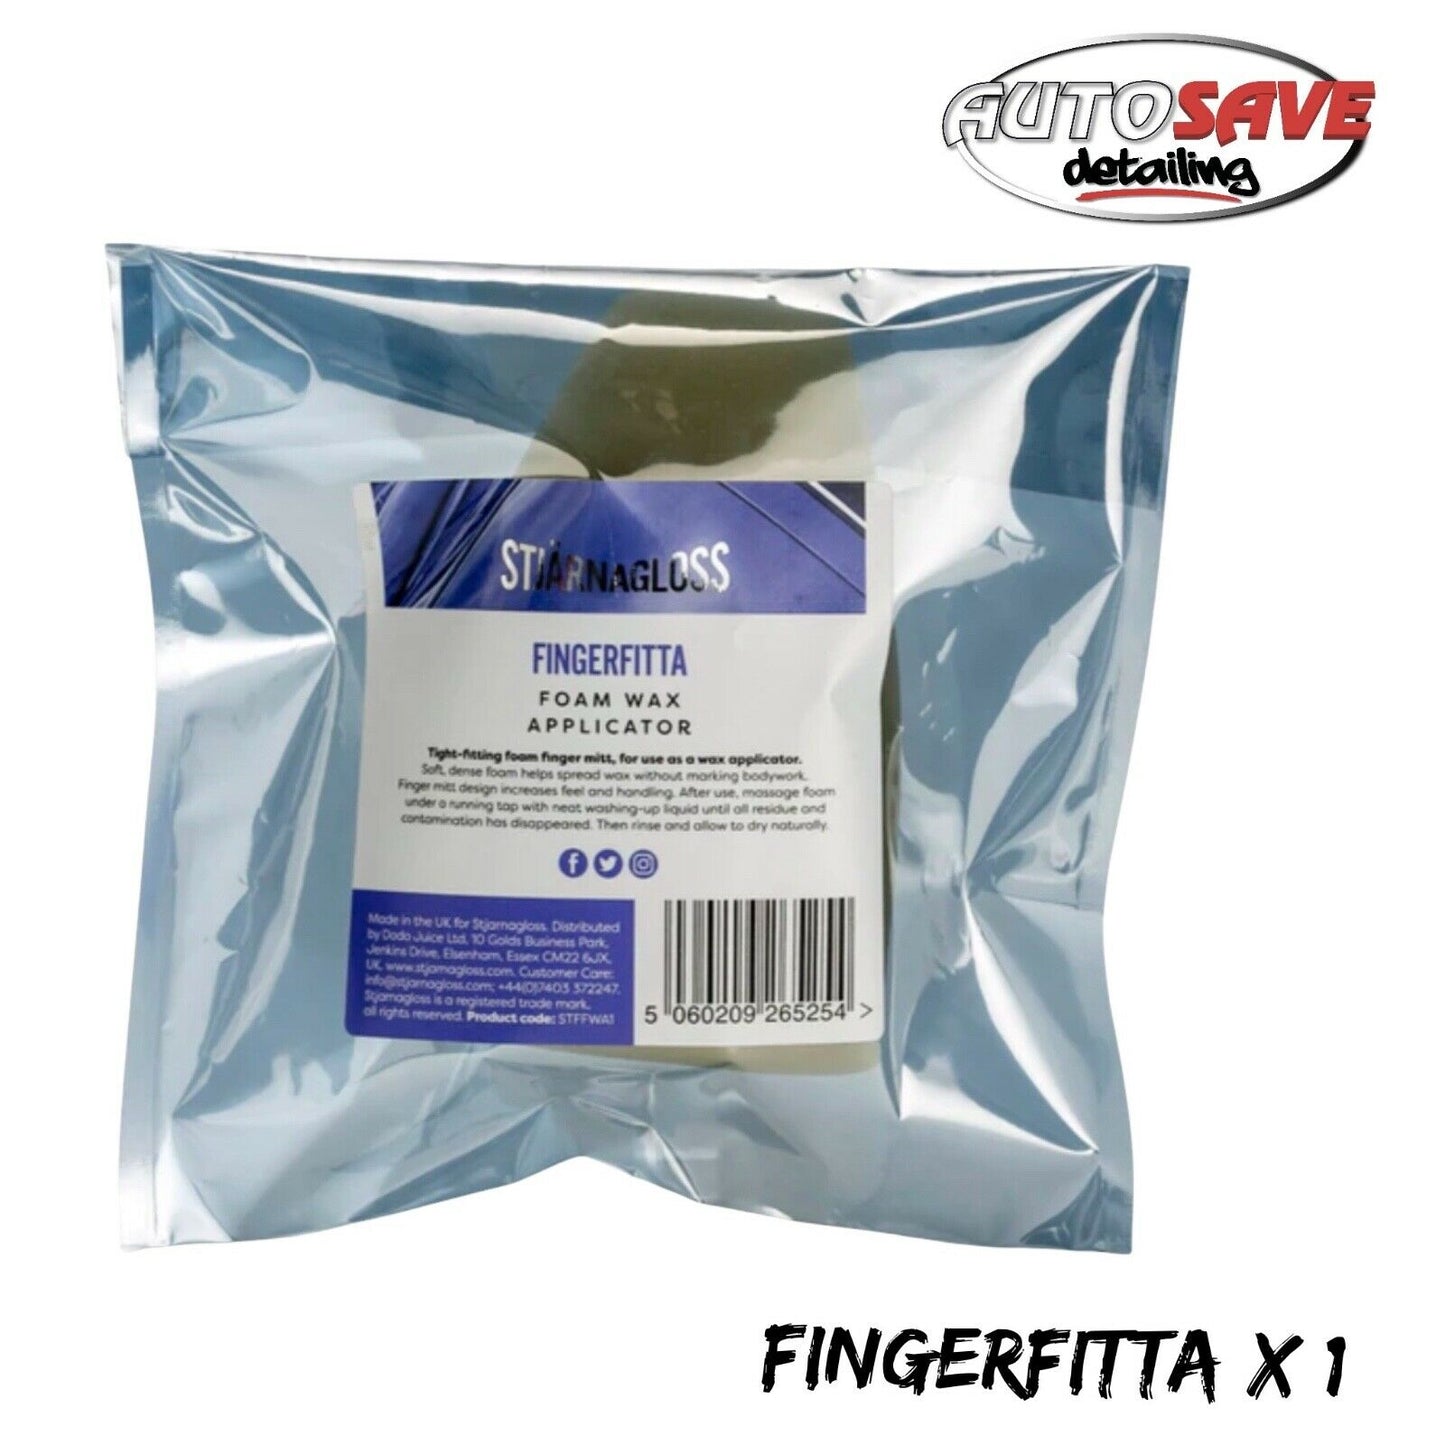 Stjarnagloss Fingerfitta foam wax applicator x 1